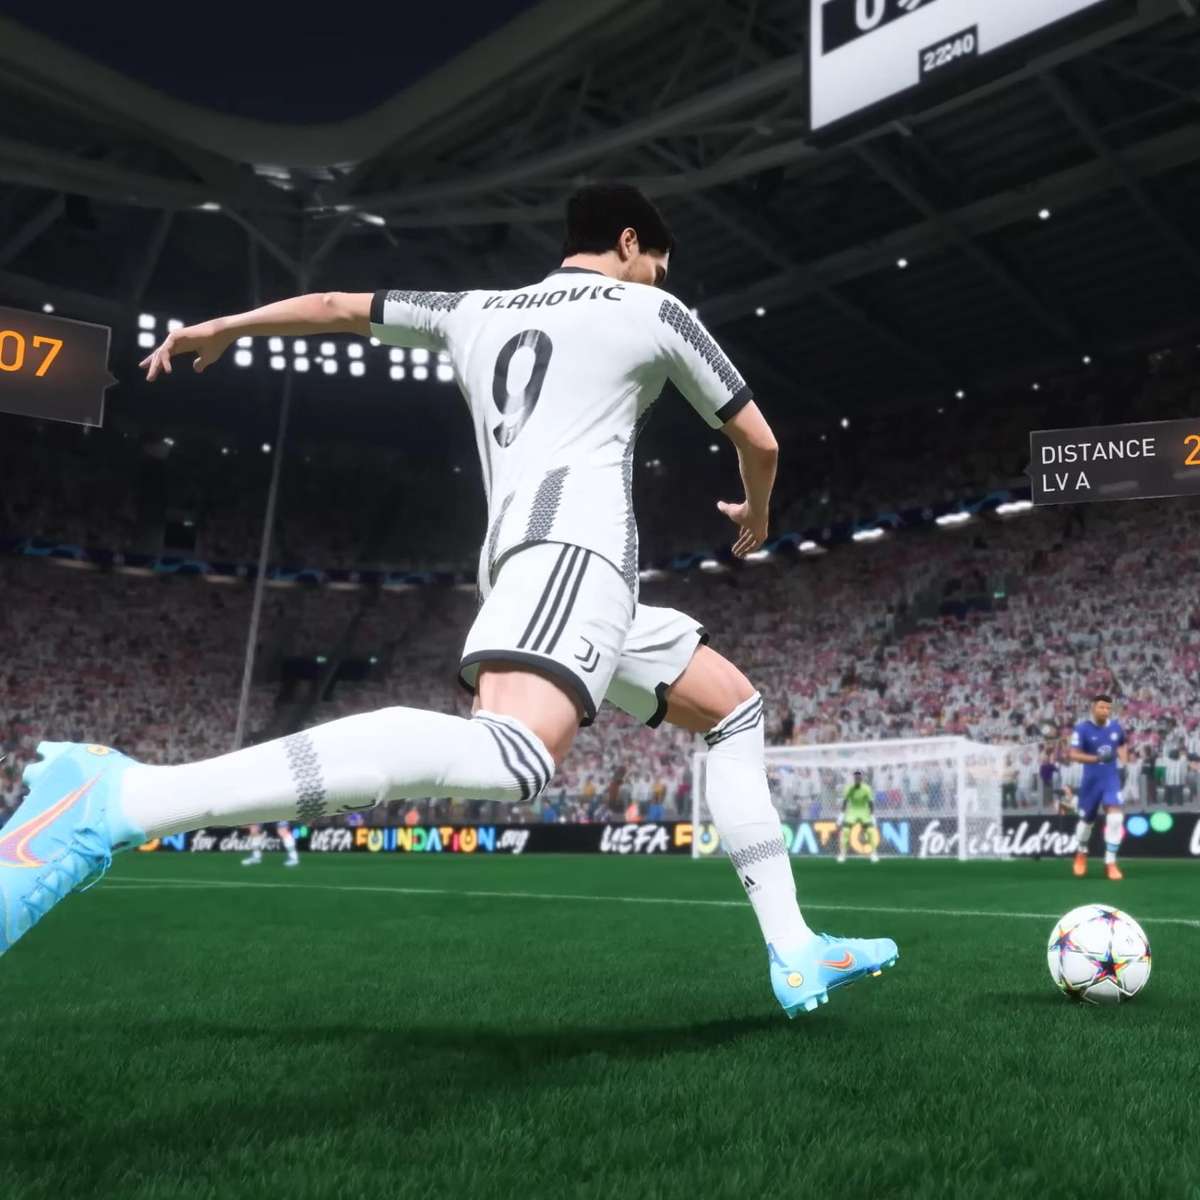 Guia passo a passo: como baixar FIFA 18 no Android